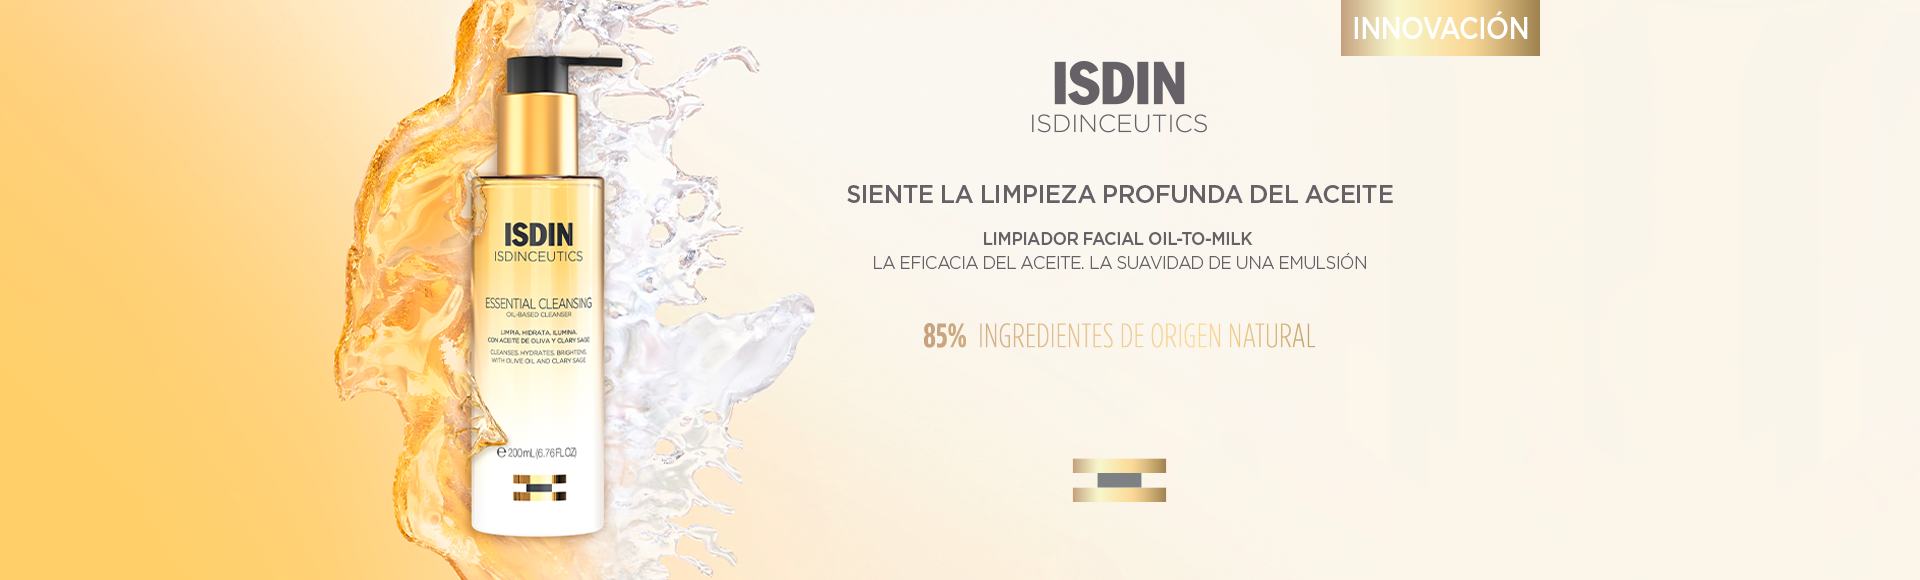 ISDIN Isdinceutics Essential Cleansing Oil - Facial Cleanser with Cleansing  Oil for Radiant Skin, 6.76 FL OZ